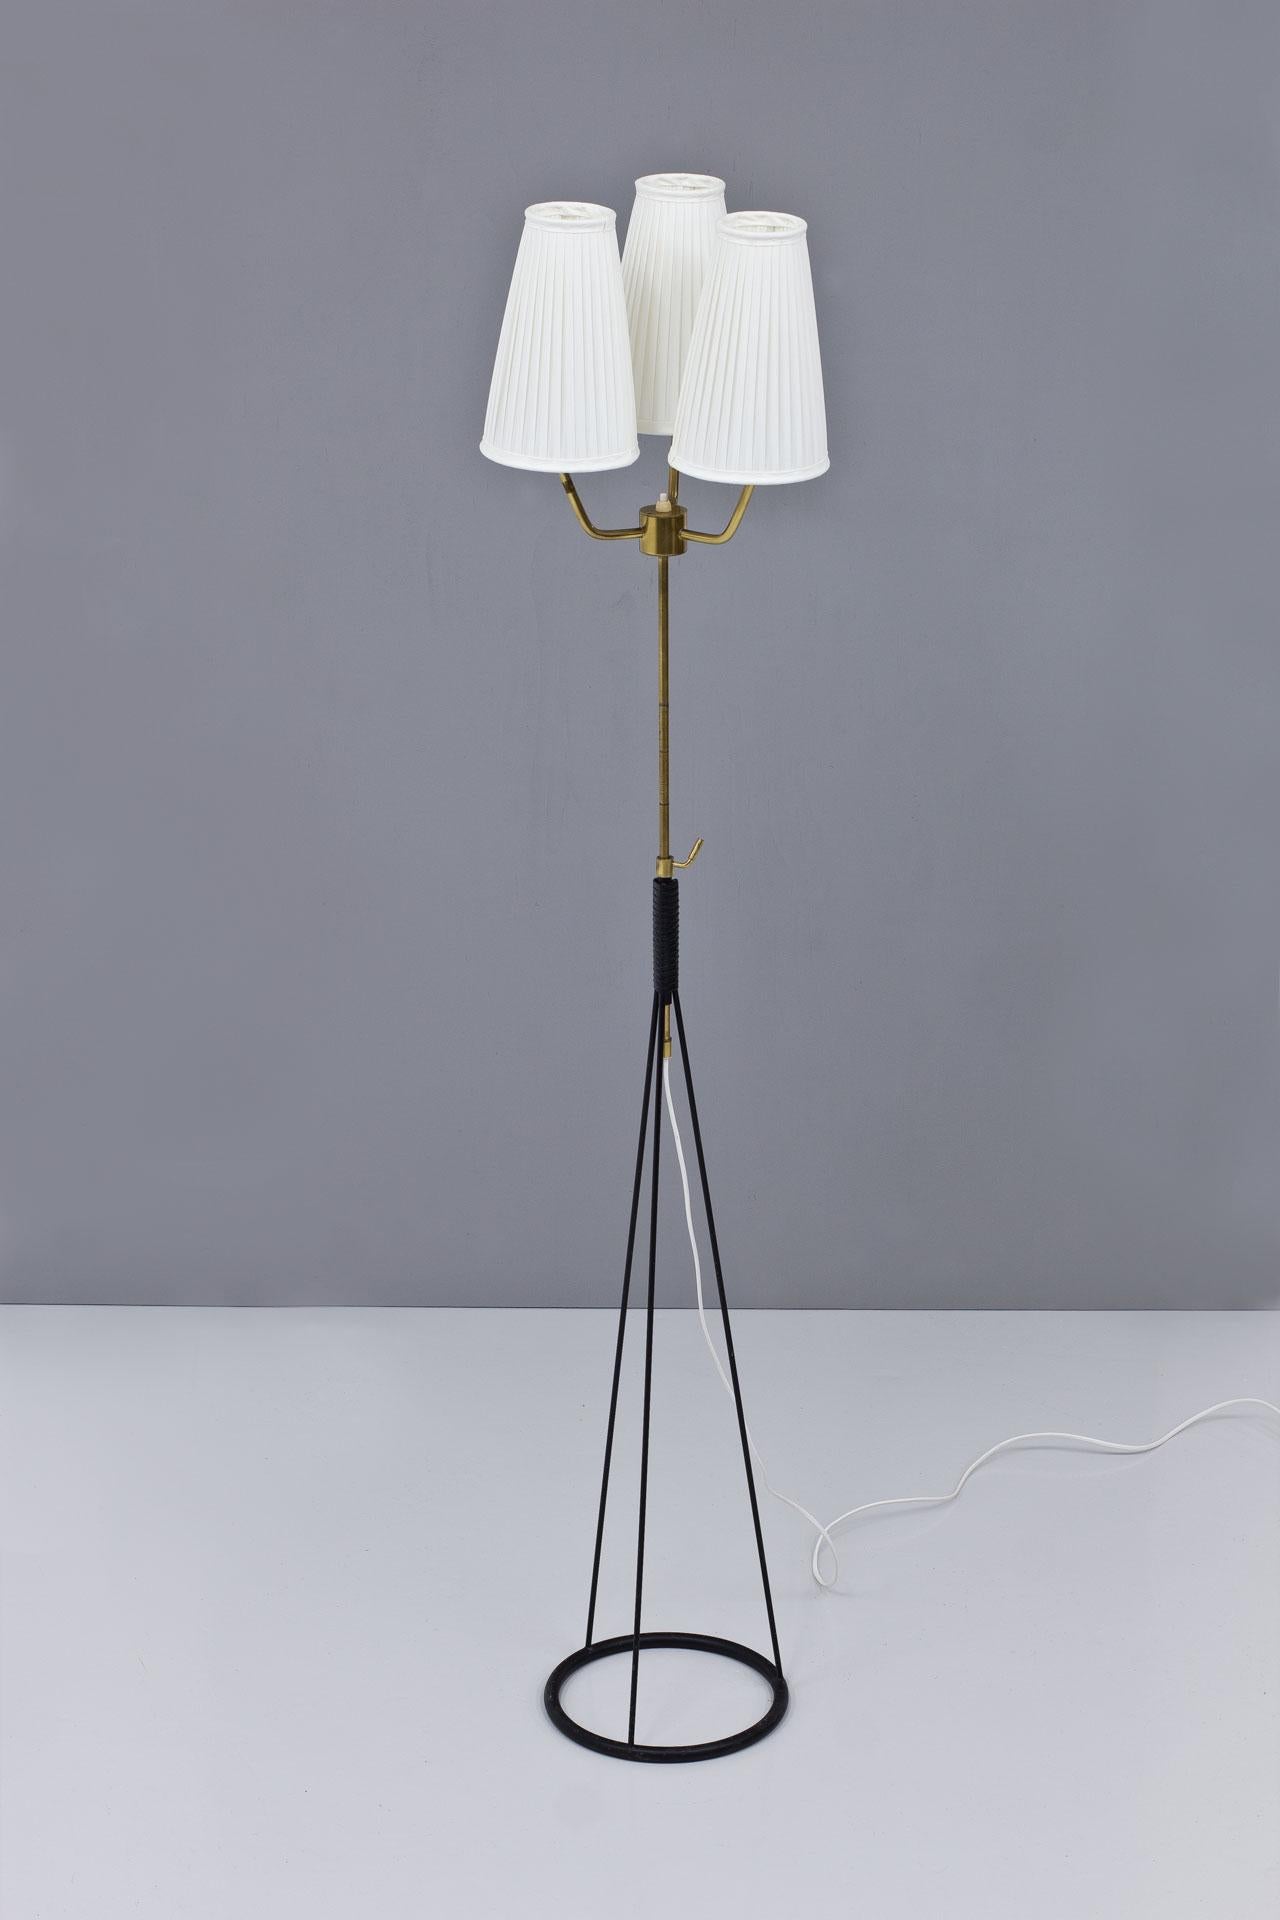 Seltene Stehleuchte, entworfen von Eje Ahlgren, hergestellt von AB Luco in Göteborg, Schweden in den 1950er Jahren.
Schwarz lackiertes Metall mit Messingstiel. Die Original-Lampenschirme wurden mit einem cremefarbenen Chintz-Faltstoff neu bezogen.